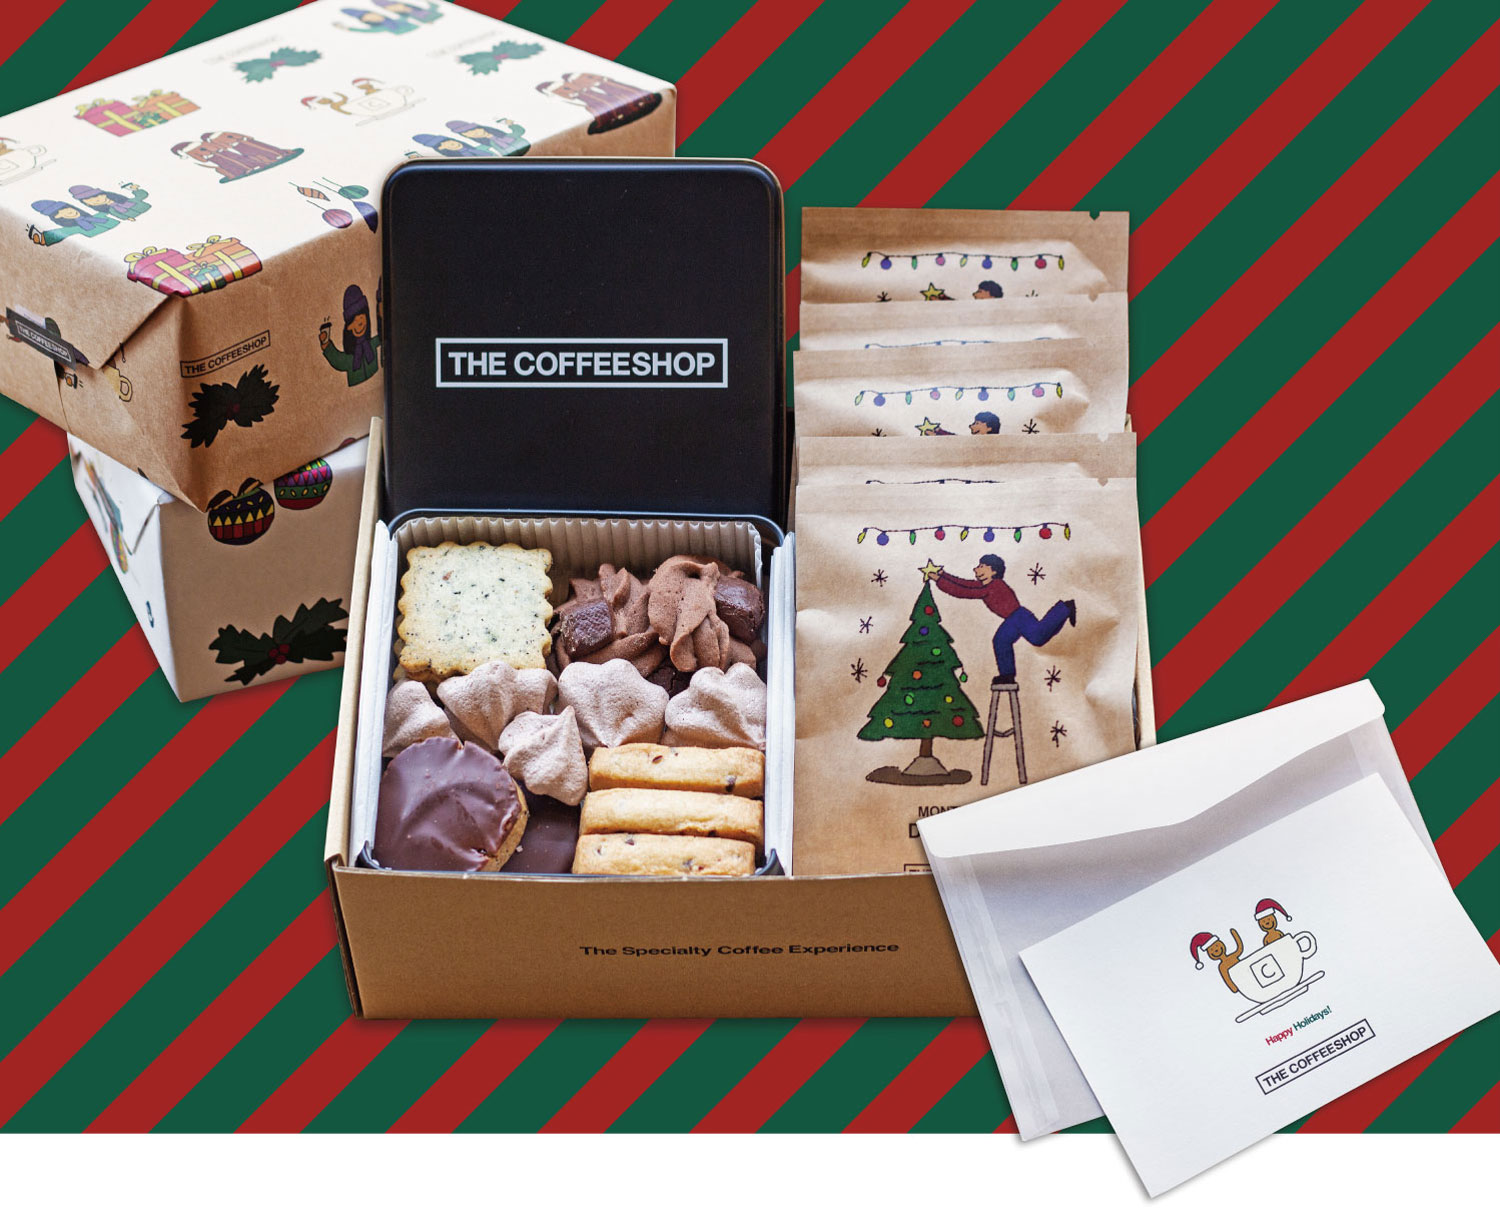 オリジナルクッキー缶とスペシャルティコーヒーのペアリング。Xmas Gift Boxのご予約は12/3(日)まで